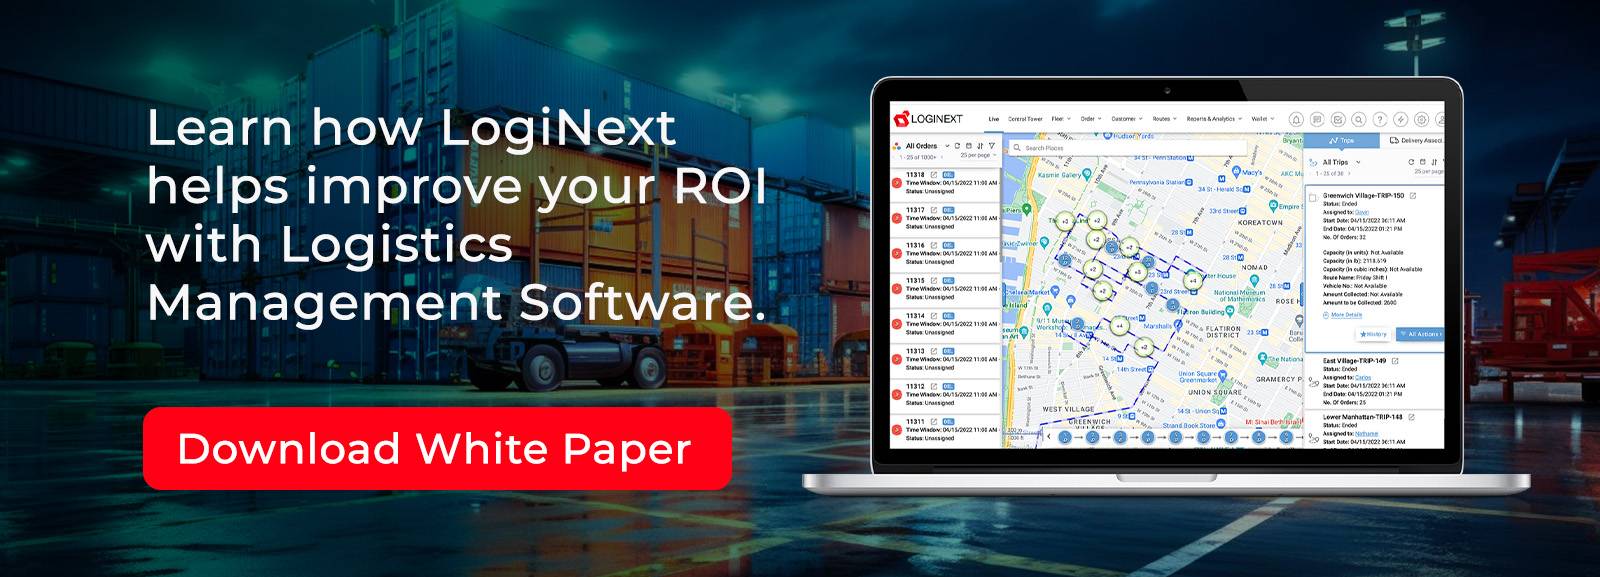 Bela knjiga programske opreme za upravljanje logistike Prenesite s spletnega mesta LogiNext